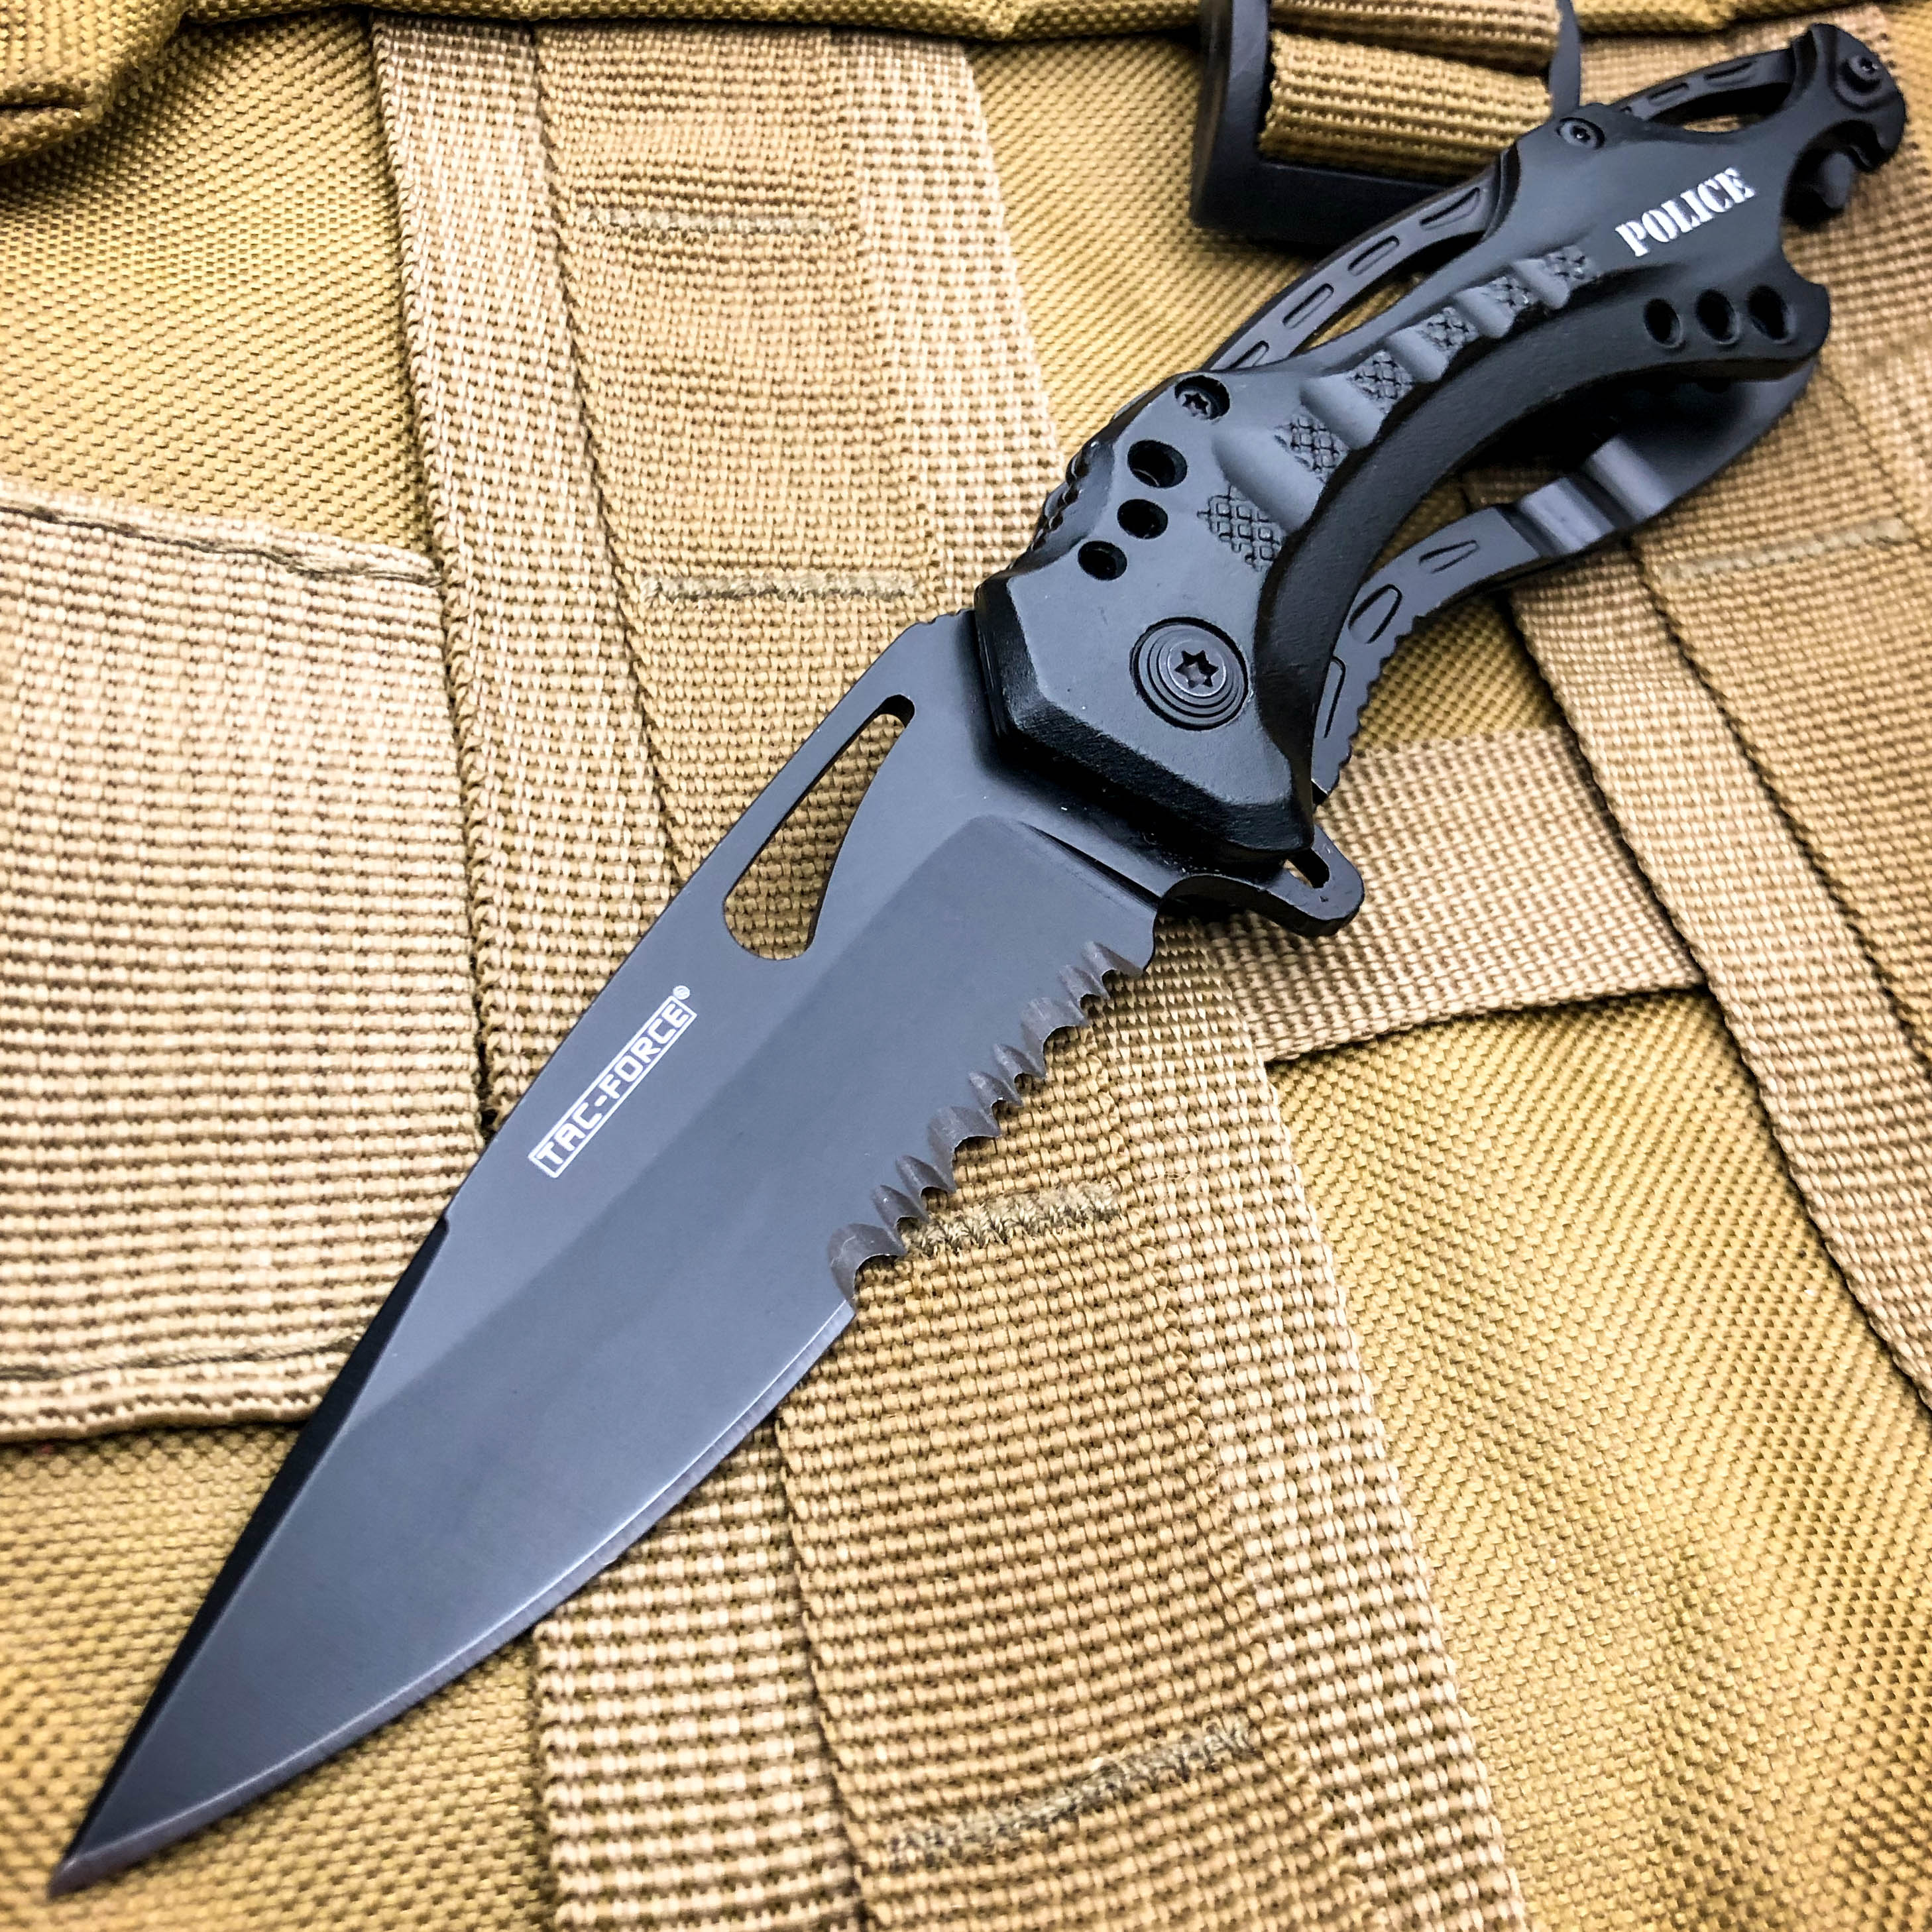 SPRING-ASSIST FOLDING POCKET KNIFETac-Force Black Engrave Tactical Blade EDC 